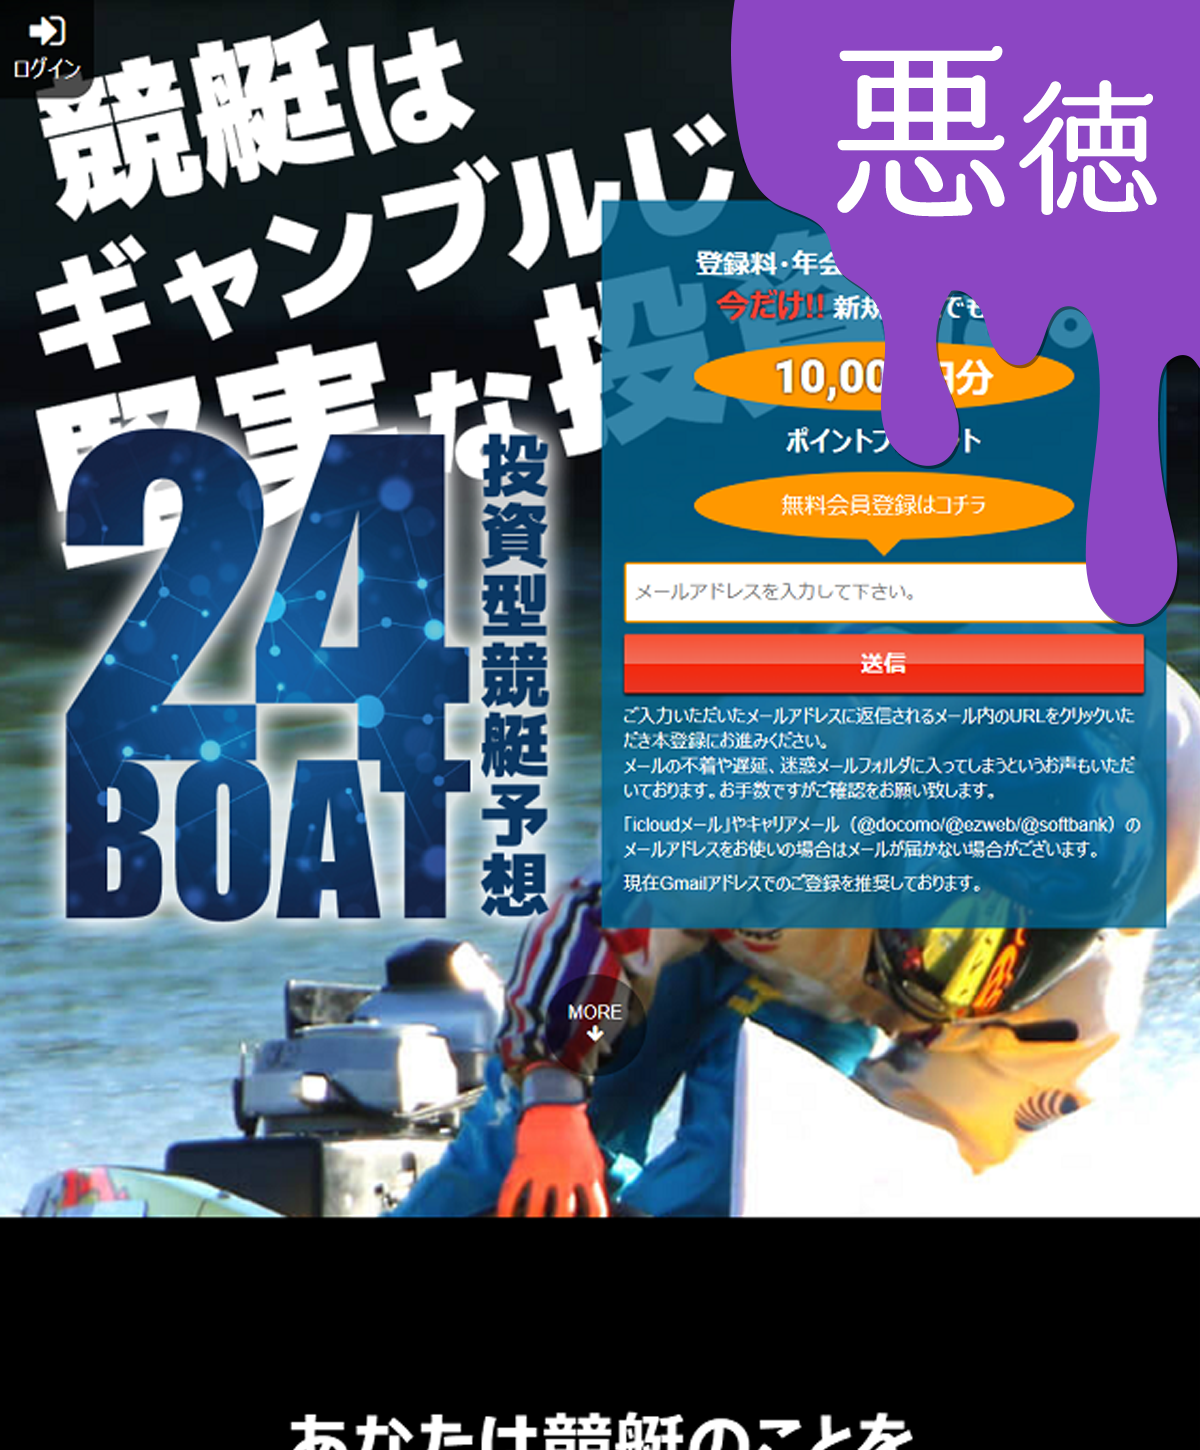 悪徳 24ボート(24BOAT) 競艇予想サイトの口コミ検証や無料情報の予想結果も公開中